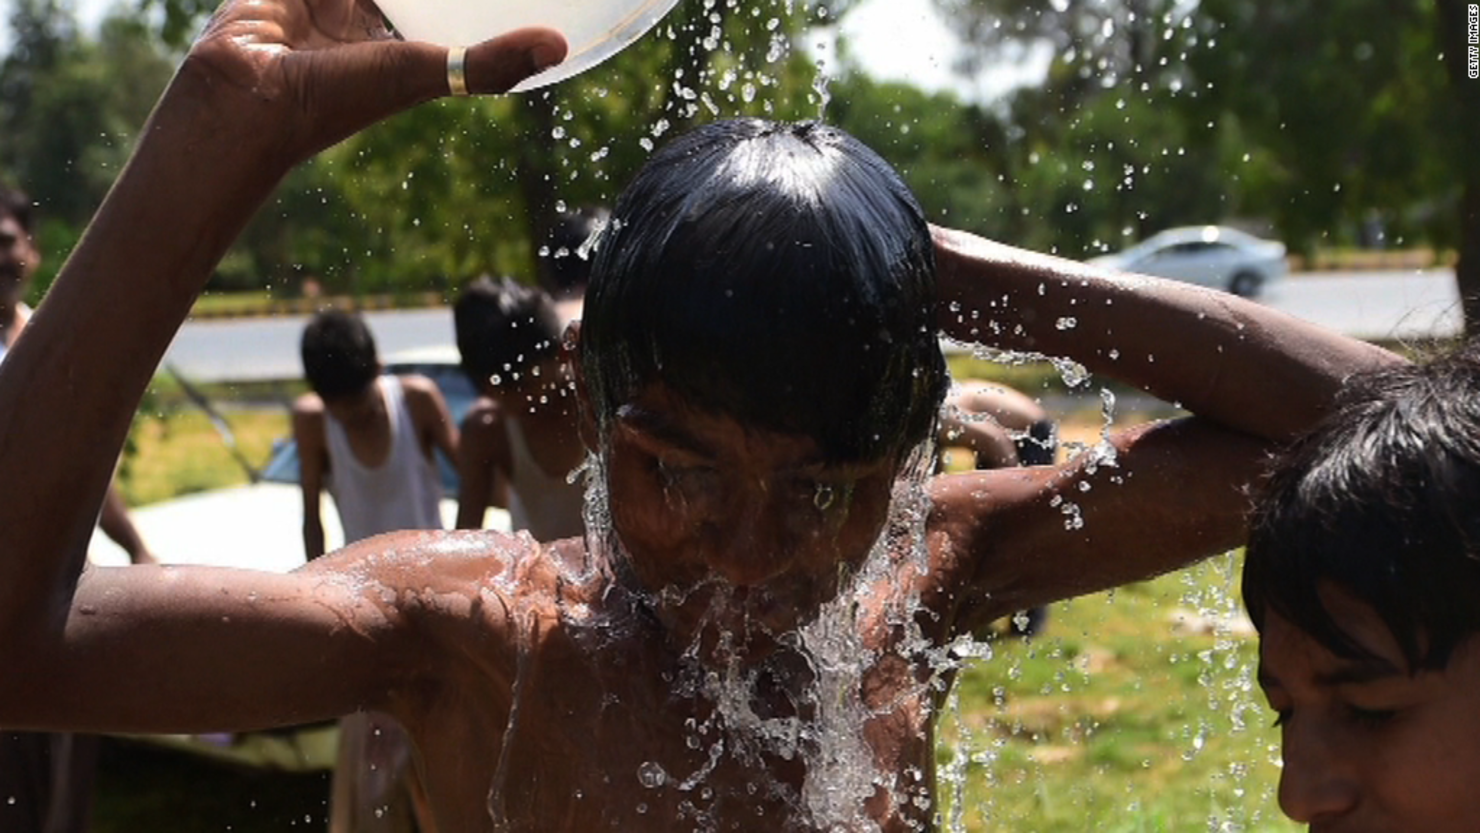 Las olas de calor propias del verano acaban con las vidas de cientos de personas en el mundo.